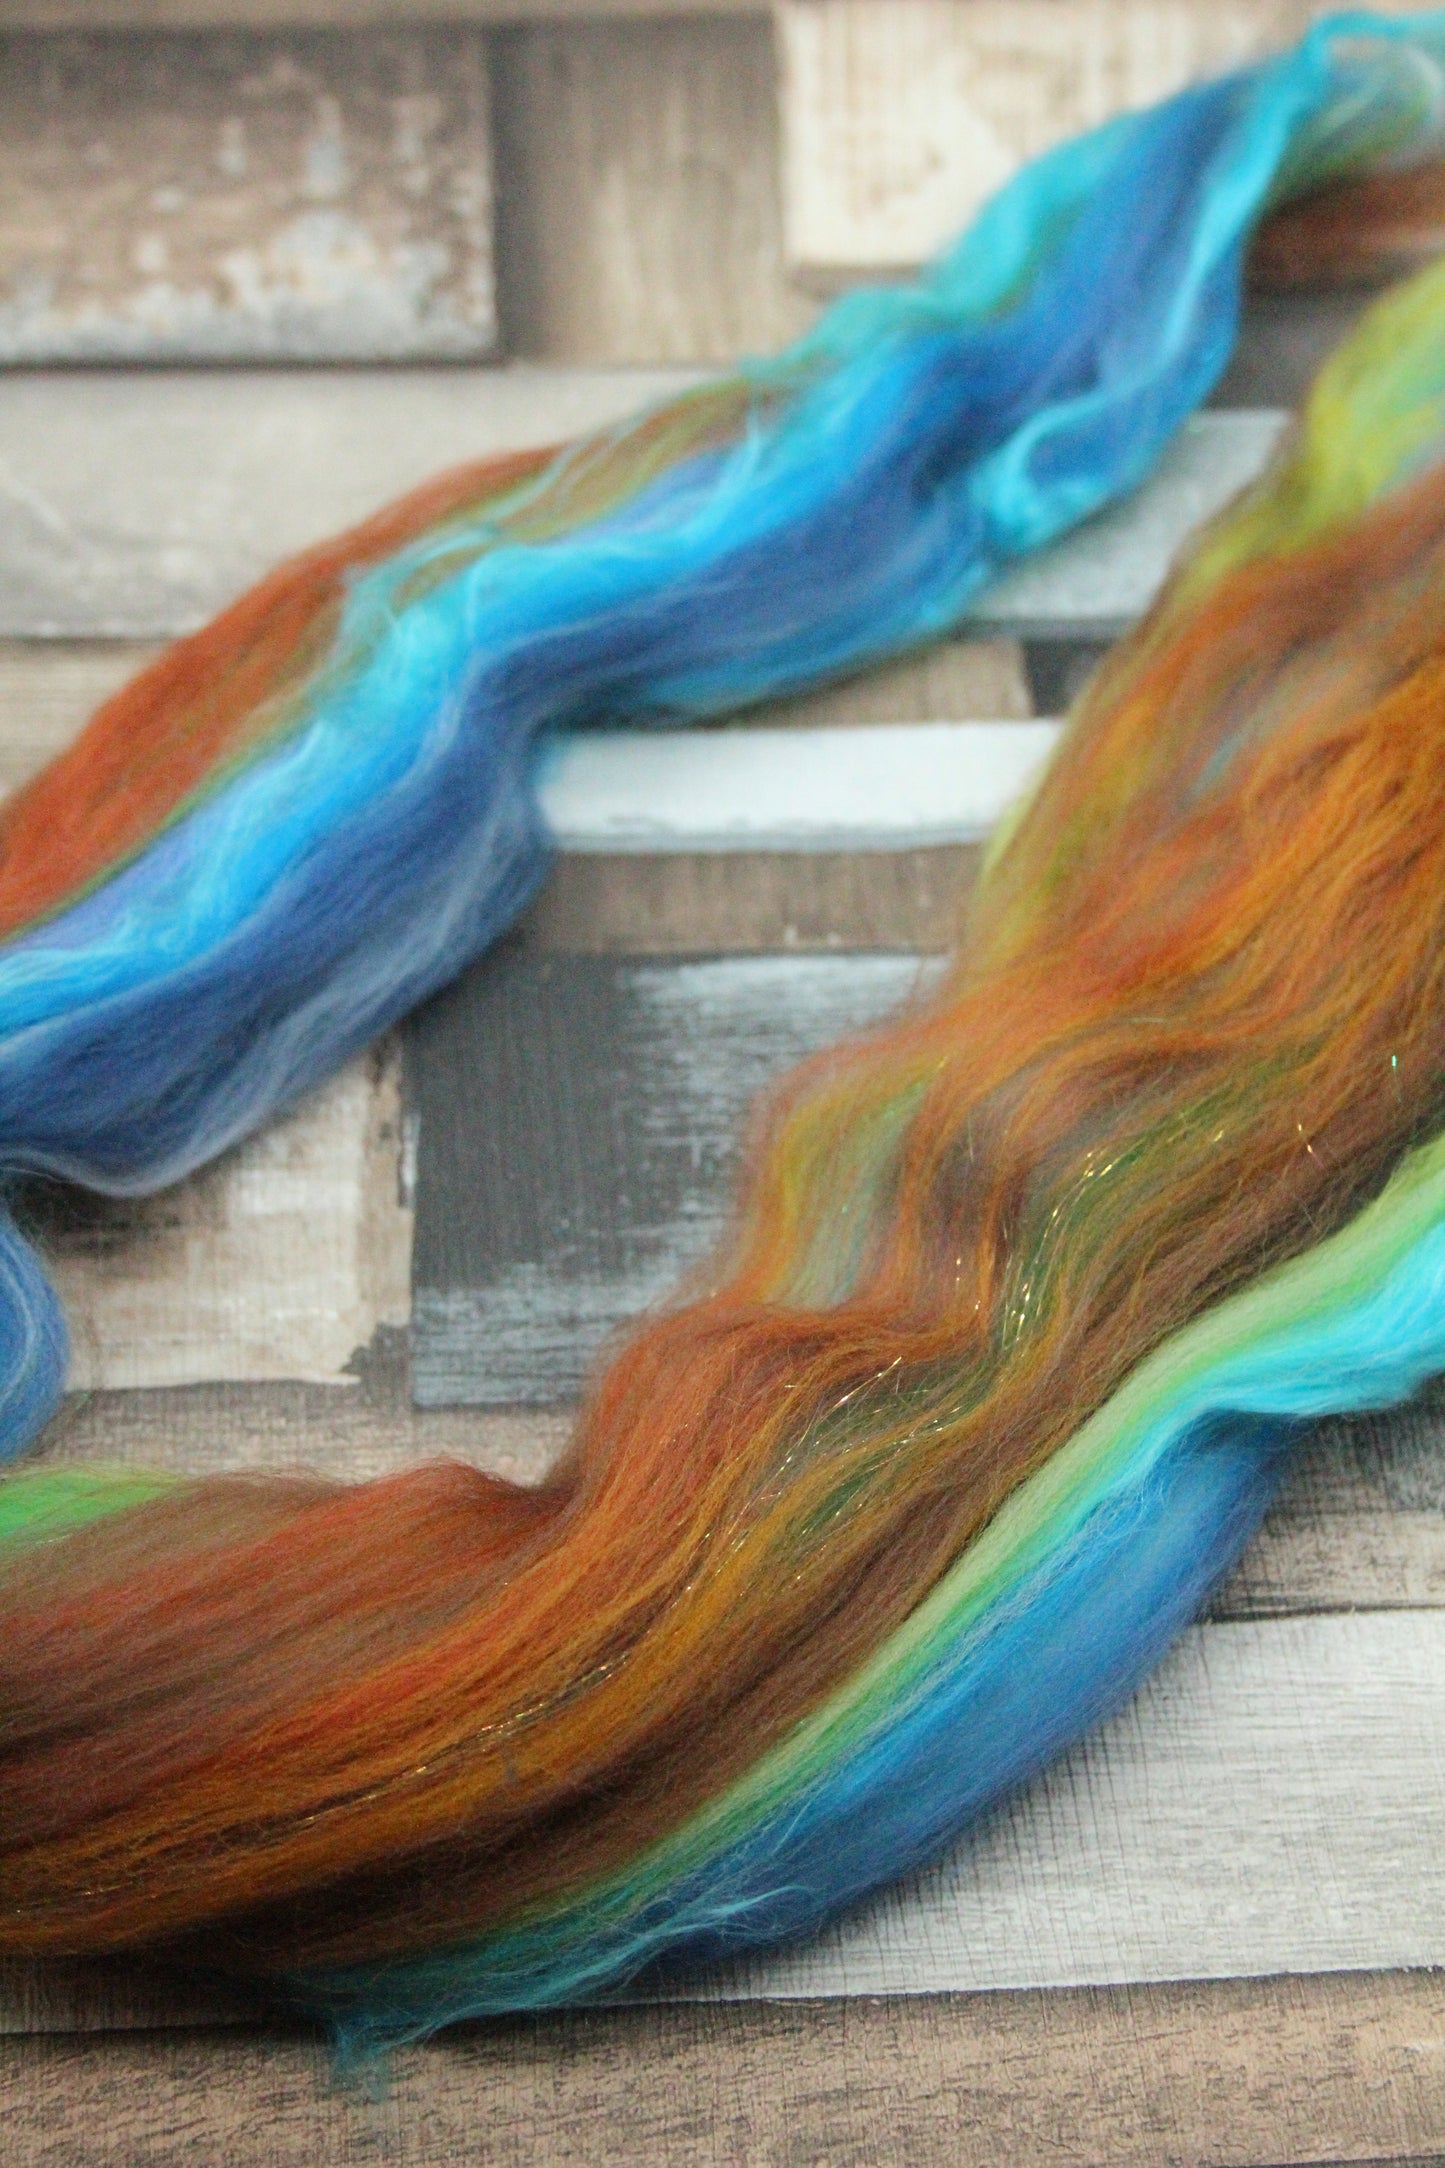 Merino Wool Blend - Brown Green Blue - 15 grams / 0.5 oz  - Fibre for felting, weaving or spinning